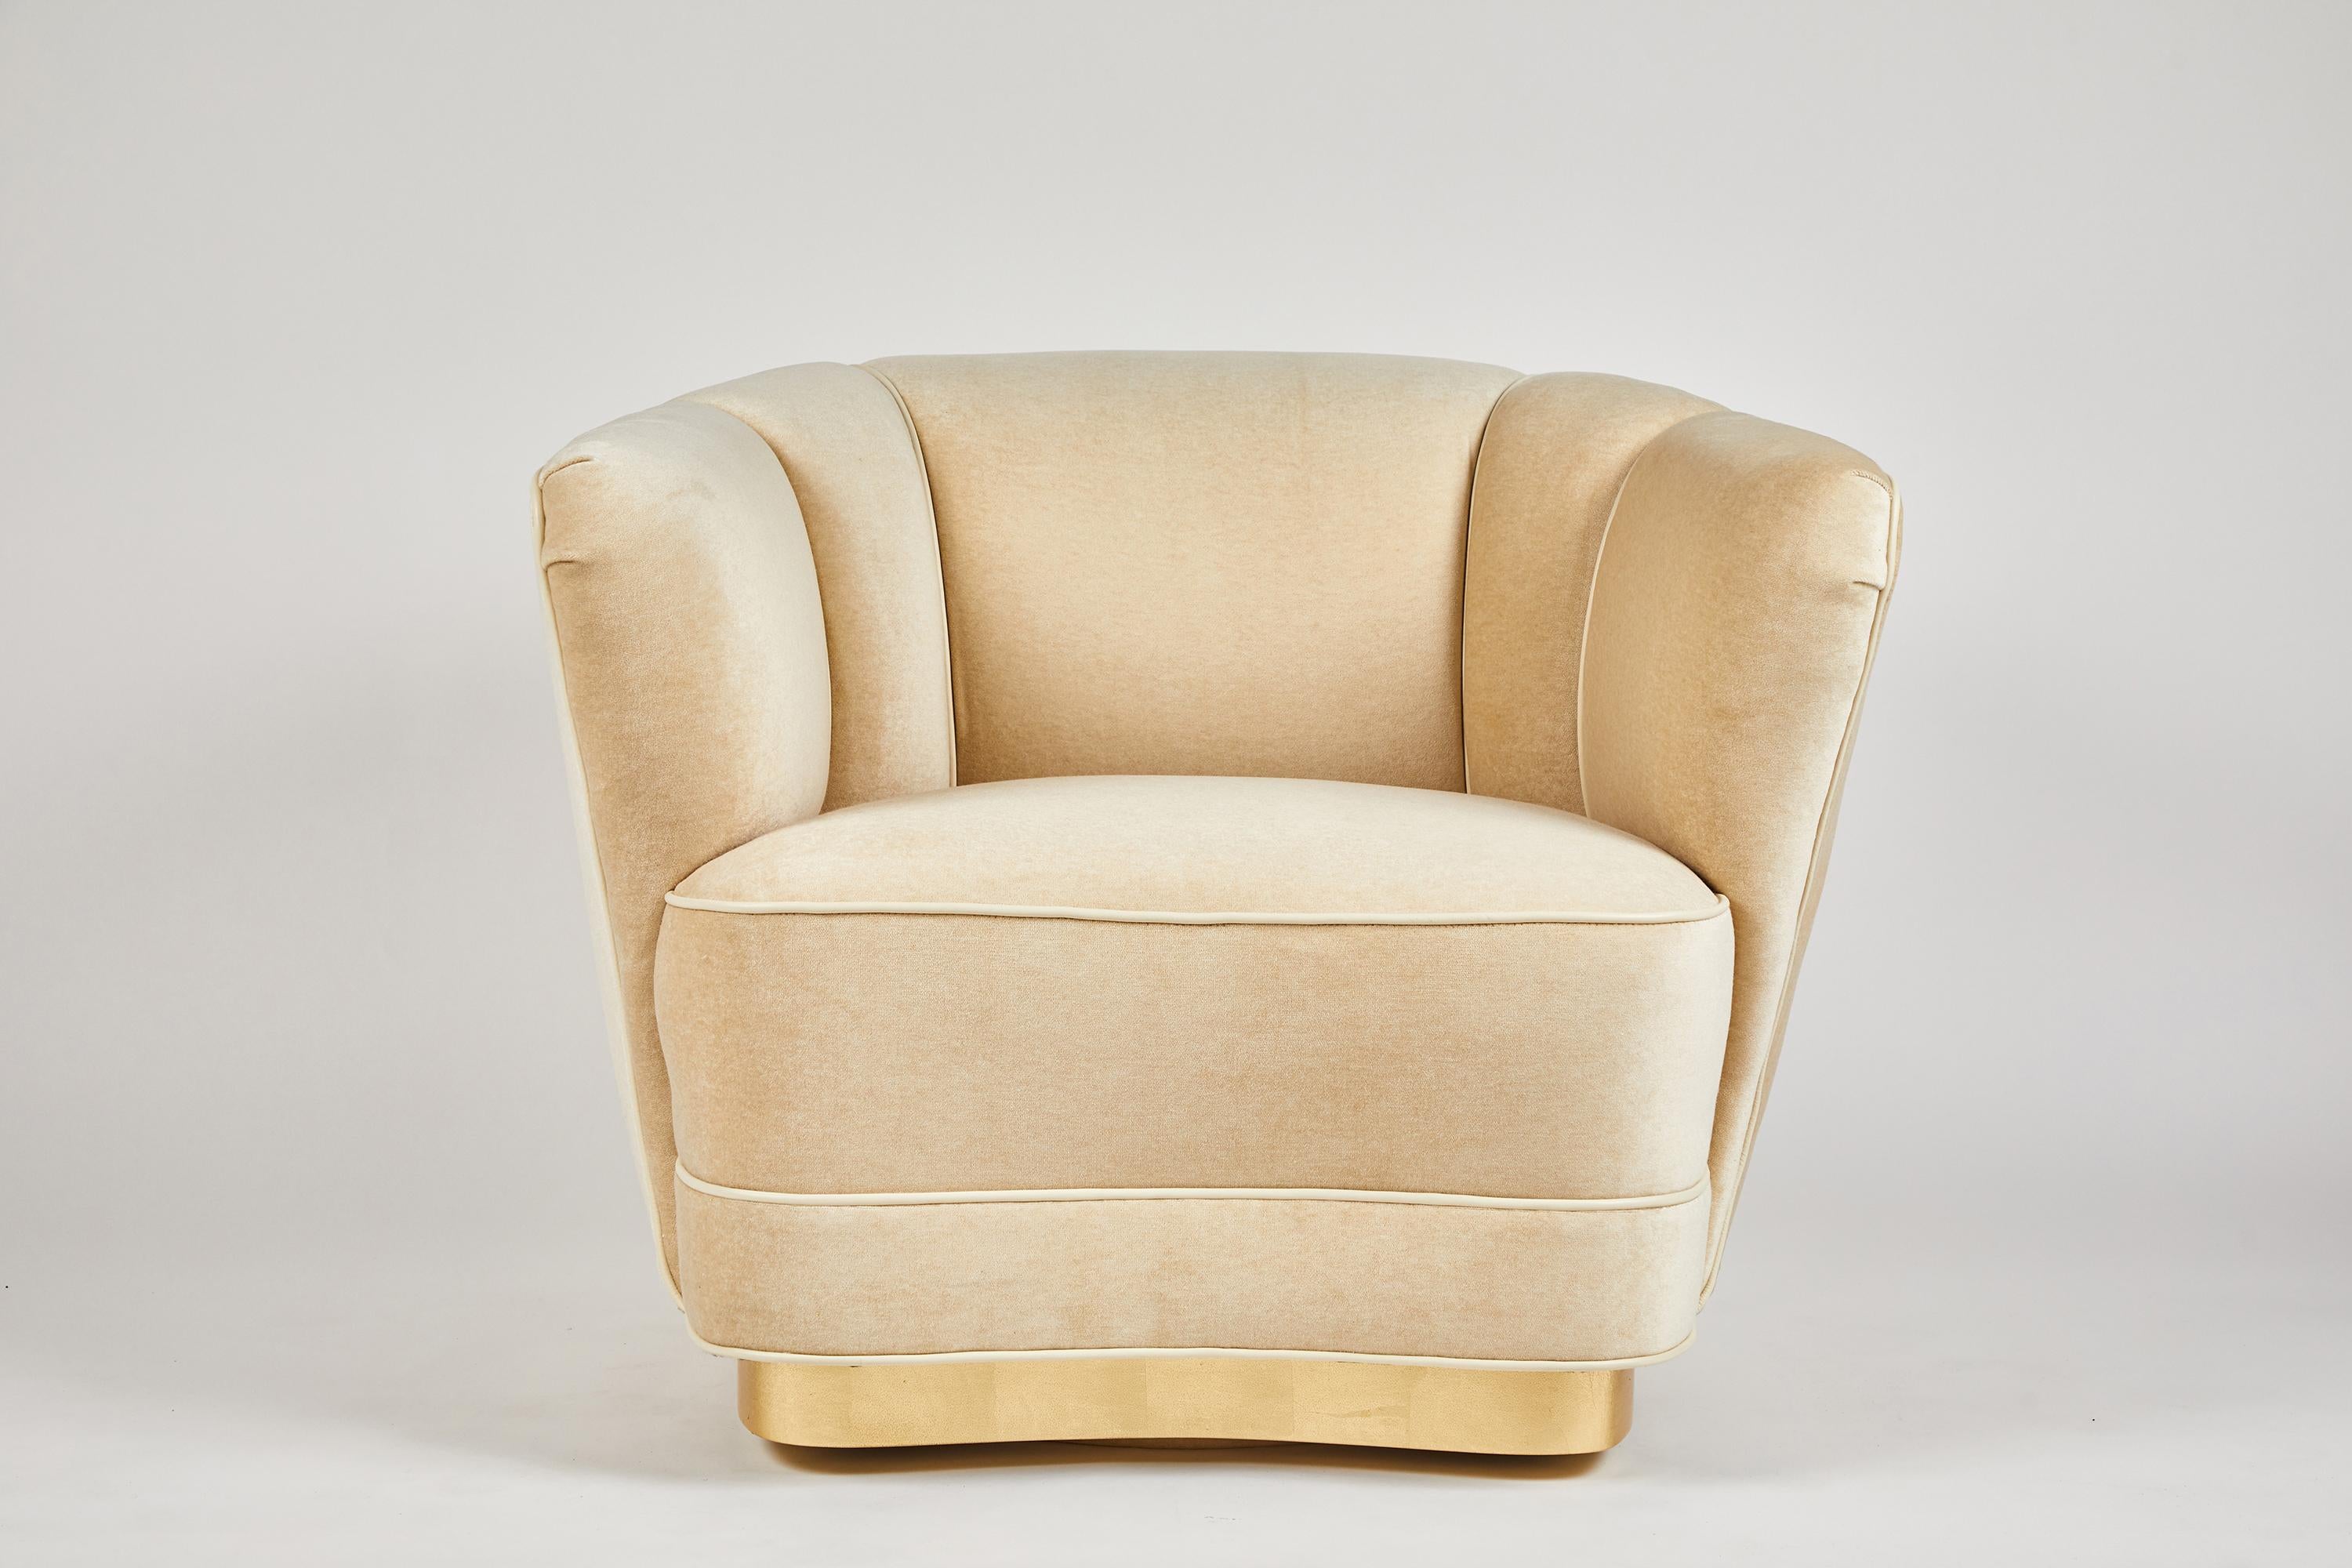 Dragonette limited stellt den Sutton place club chair vor. Ein schönes und elegantes Design, wie die schwenkbare Version auf einem blattvergoldeten Sockel zeigt. Vollständig anpassbar, einschließlich einer Version mit Füßen. Preis ist COM.